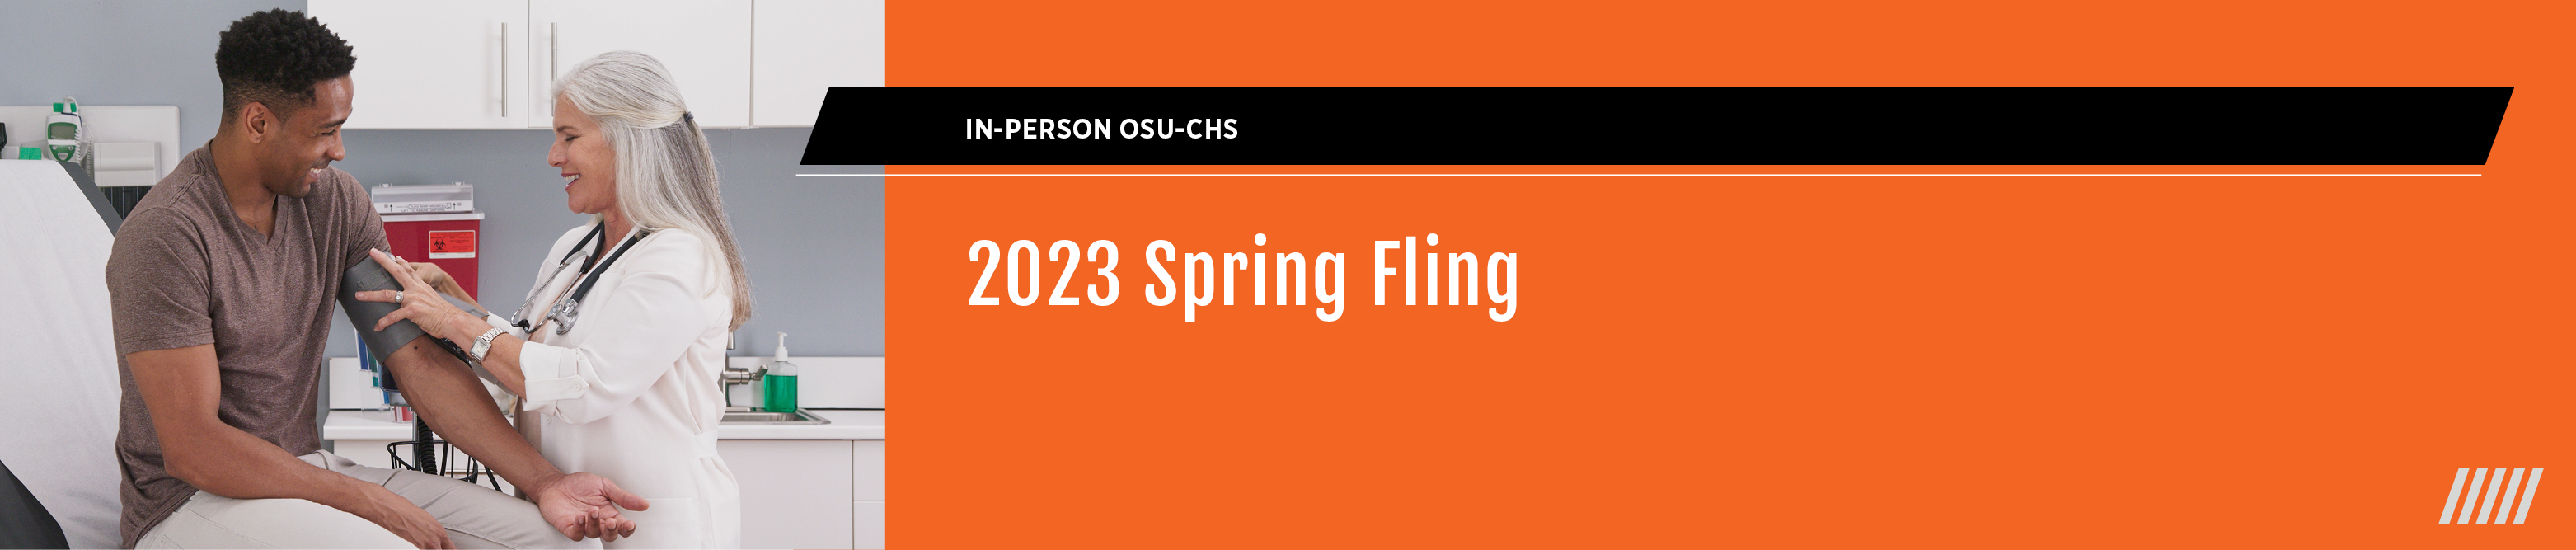 2023 Spring Fling CME Banner